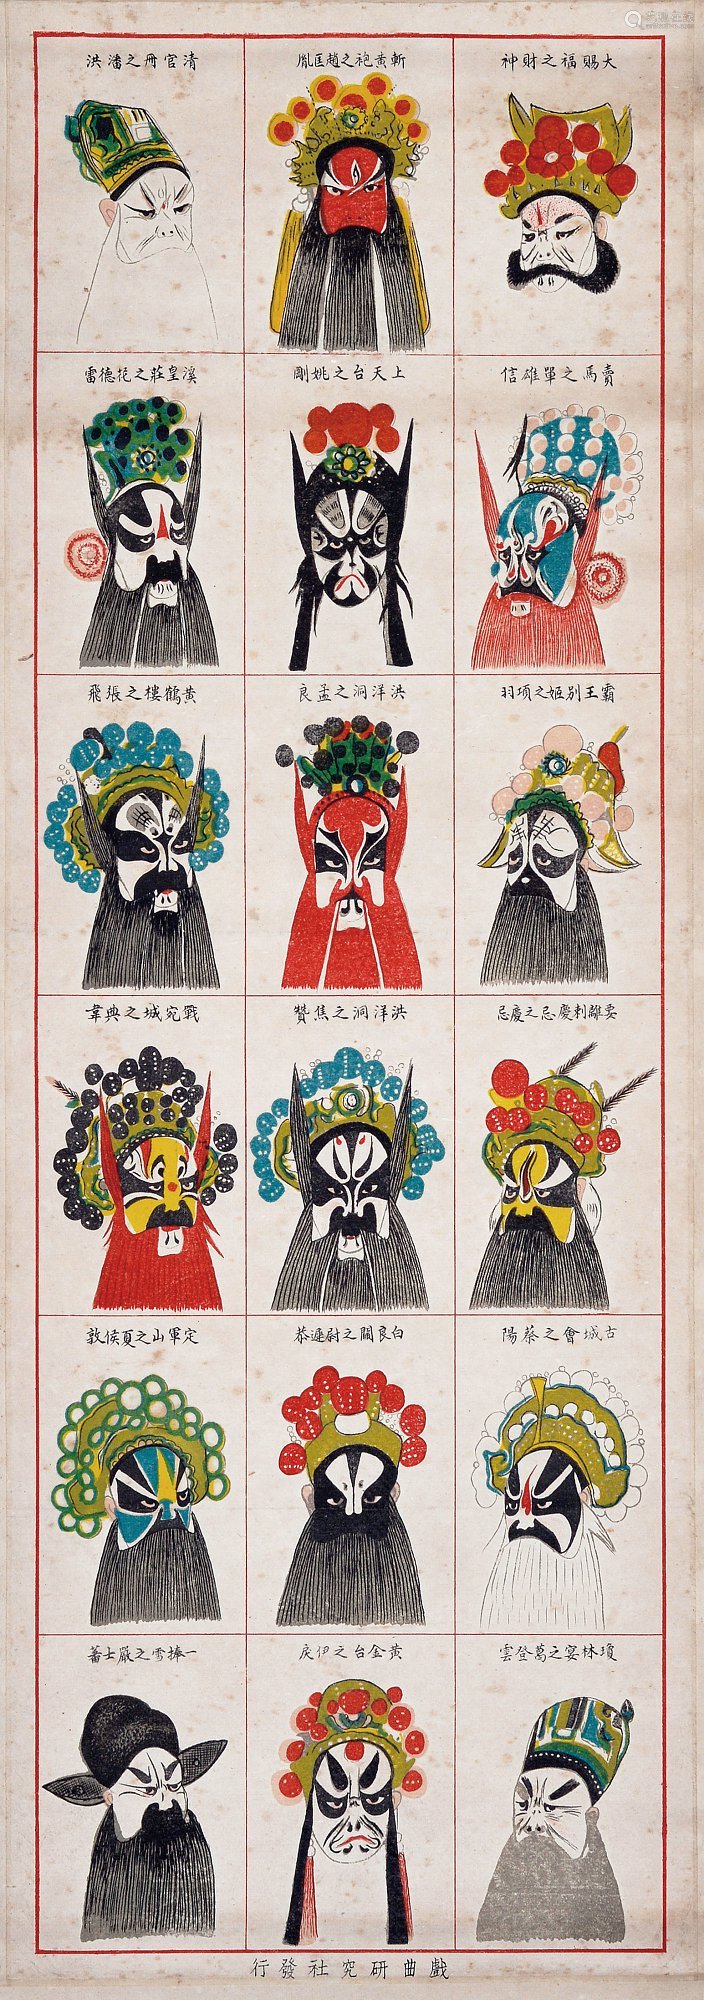 民国二十七年(1938年)张笑侠编绘北平戏剧研究社编印《戏剧人物脸谱》宣传画一组两挂轴。